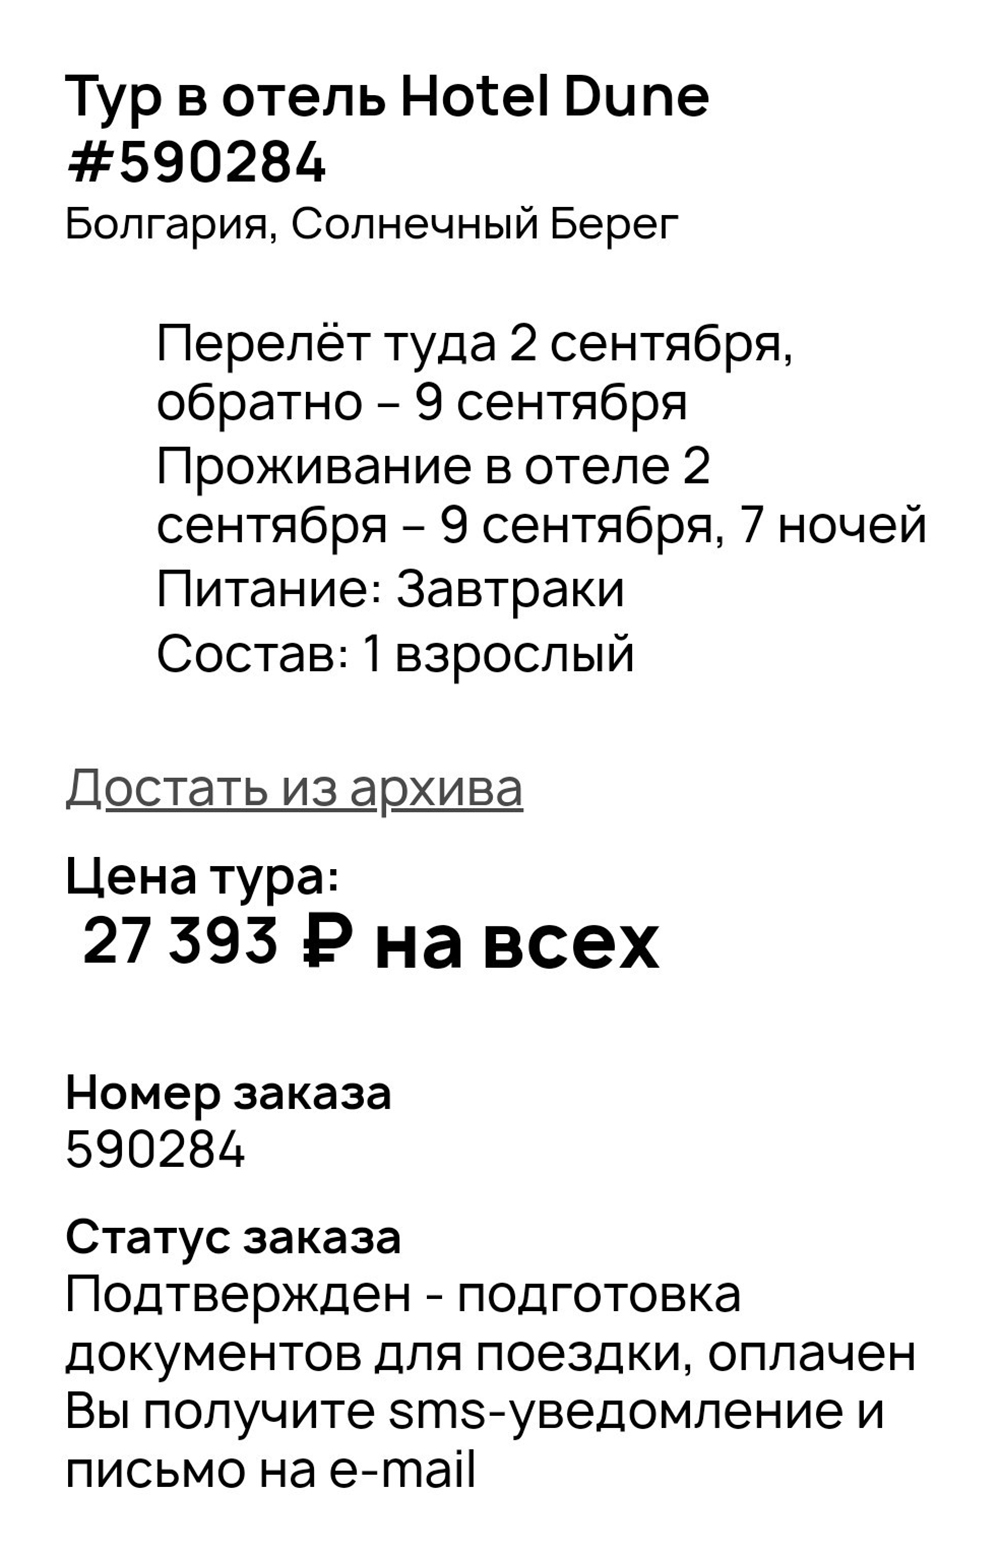 Туроператор подтвердил тур в отель на Солнечном Берегу. Это скриншот из моего личного кабинета, где до сих пор хранятся данные о заявке. Источник: onlinetours.ru